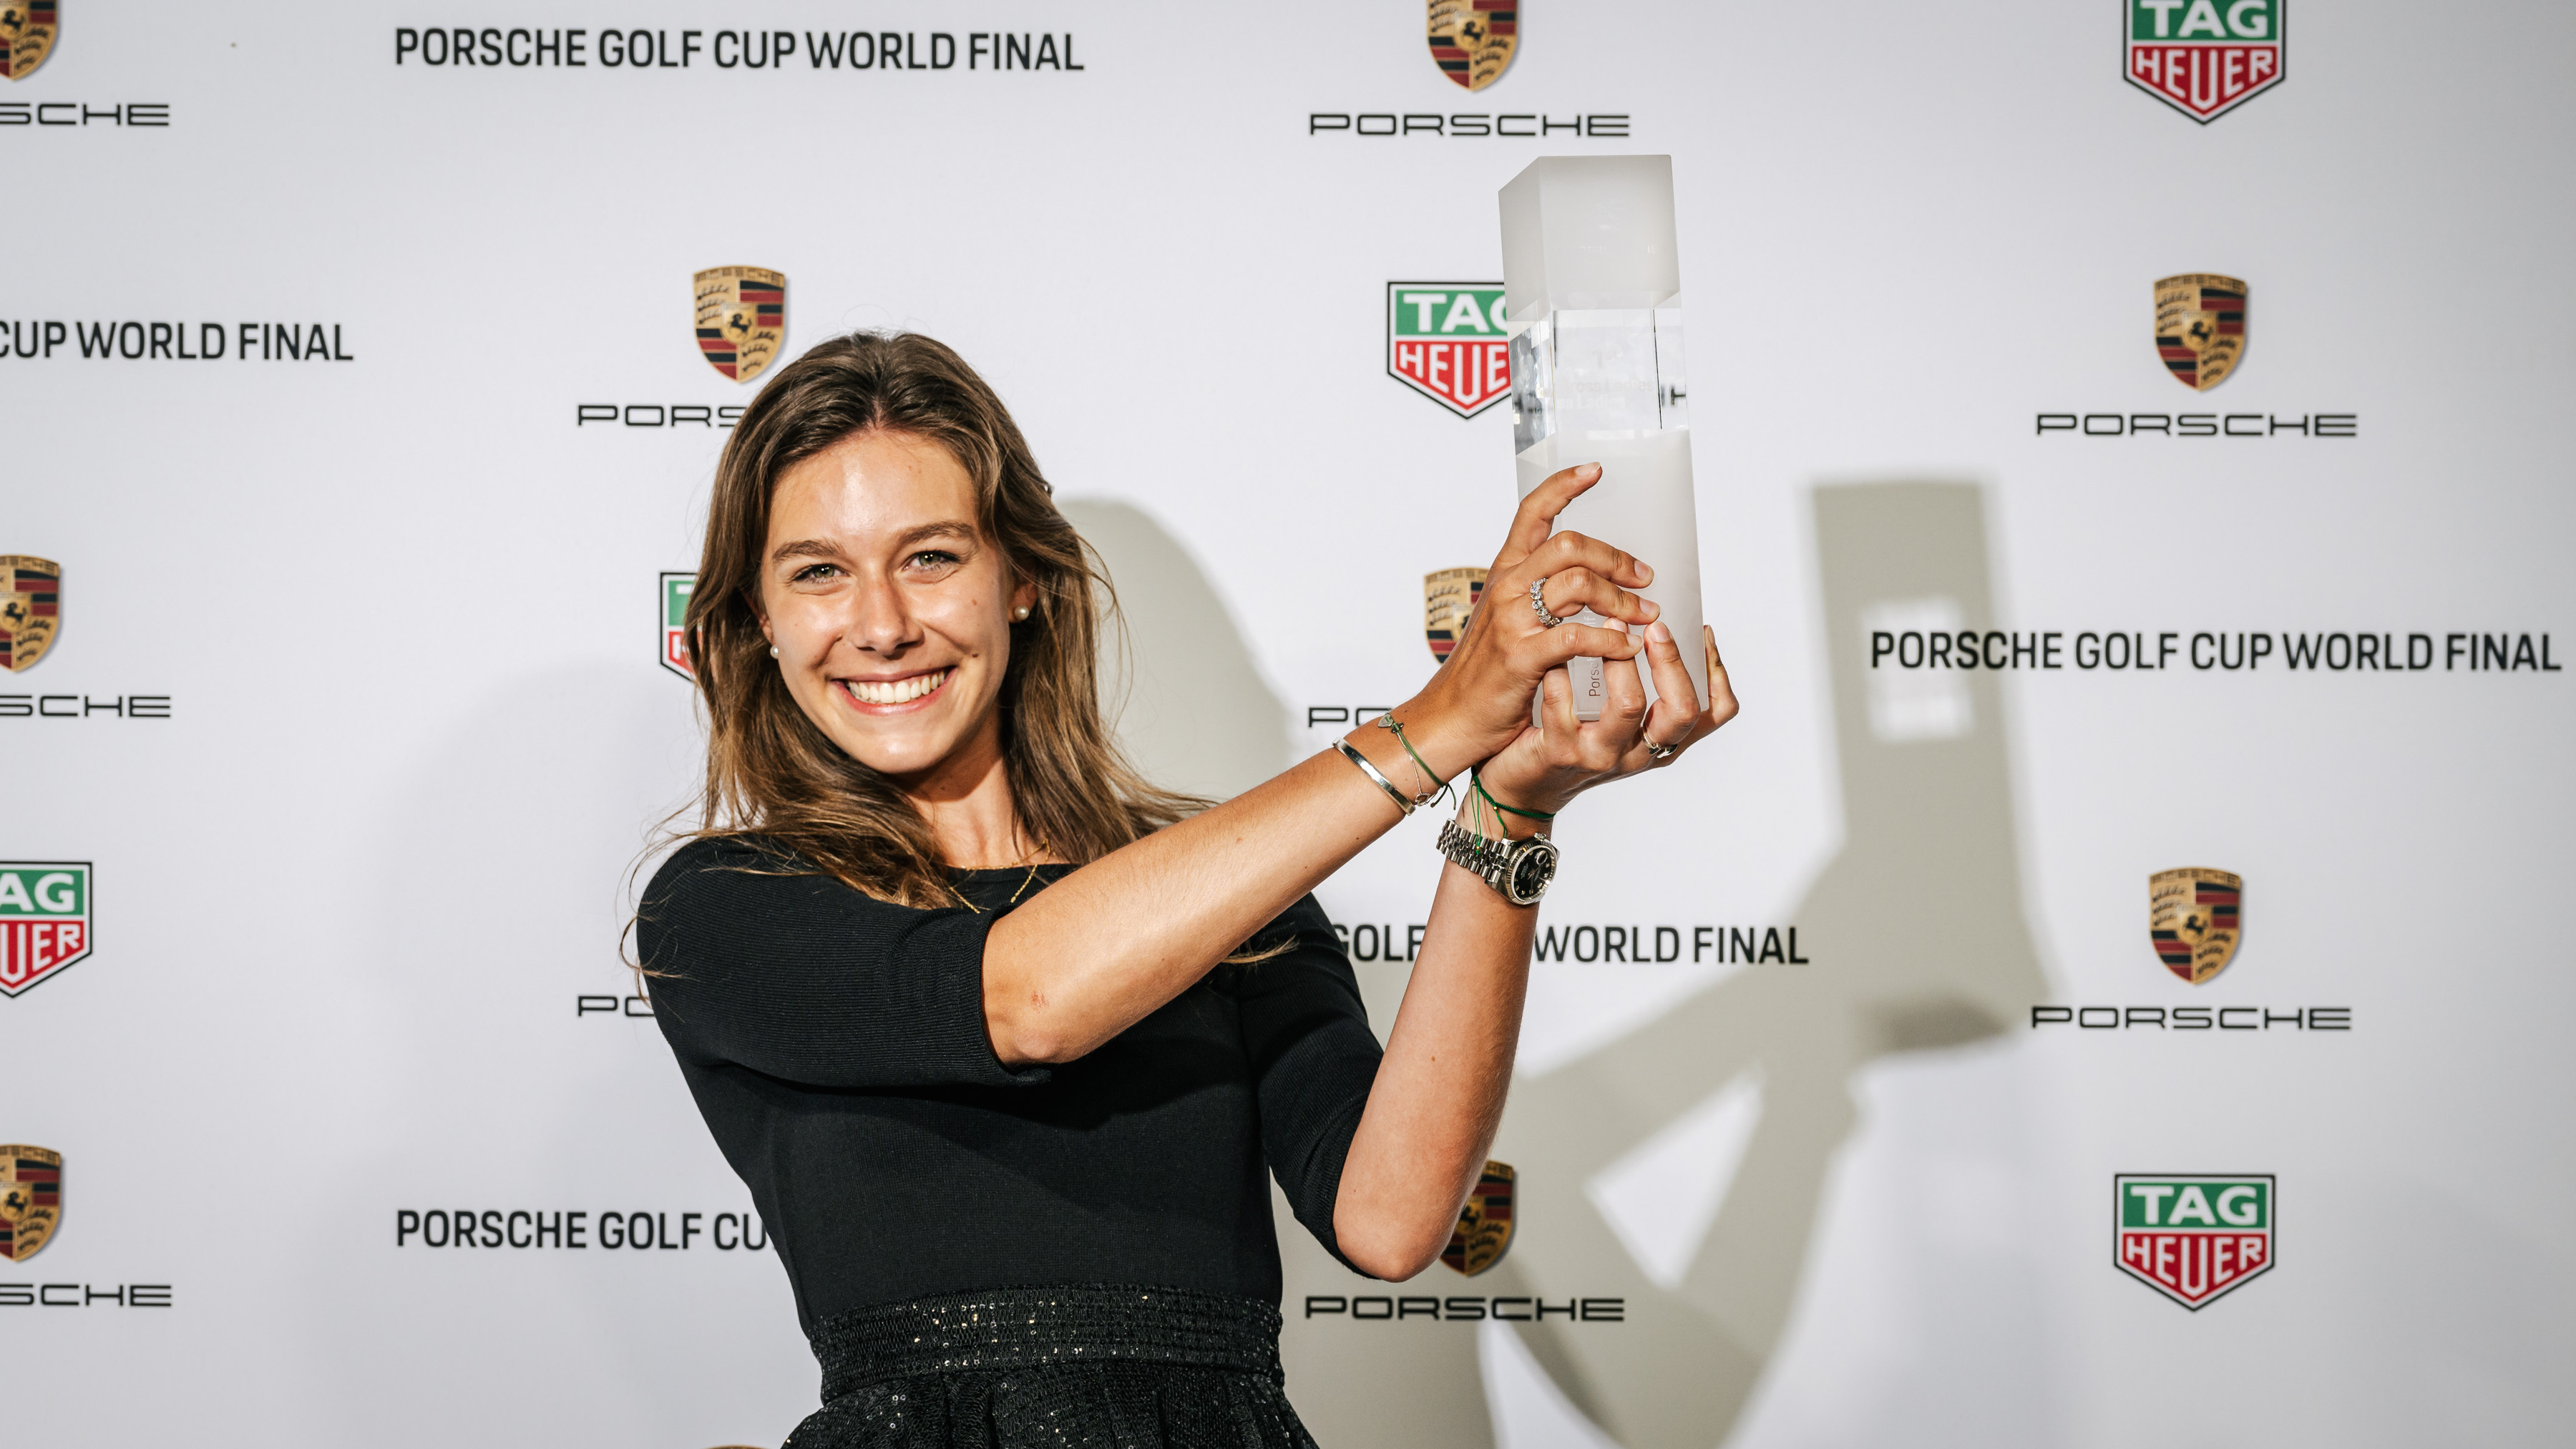 Woman holds Porsche Golf Cup World Final aloft